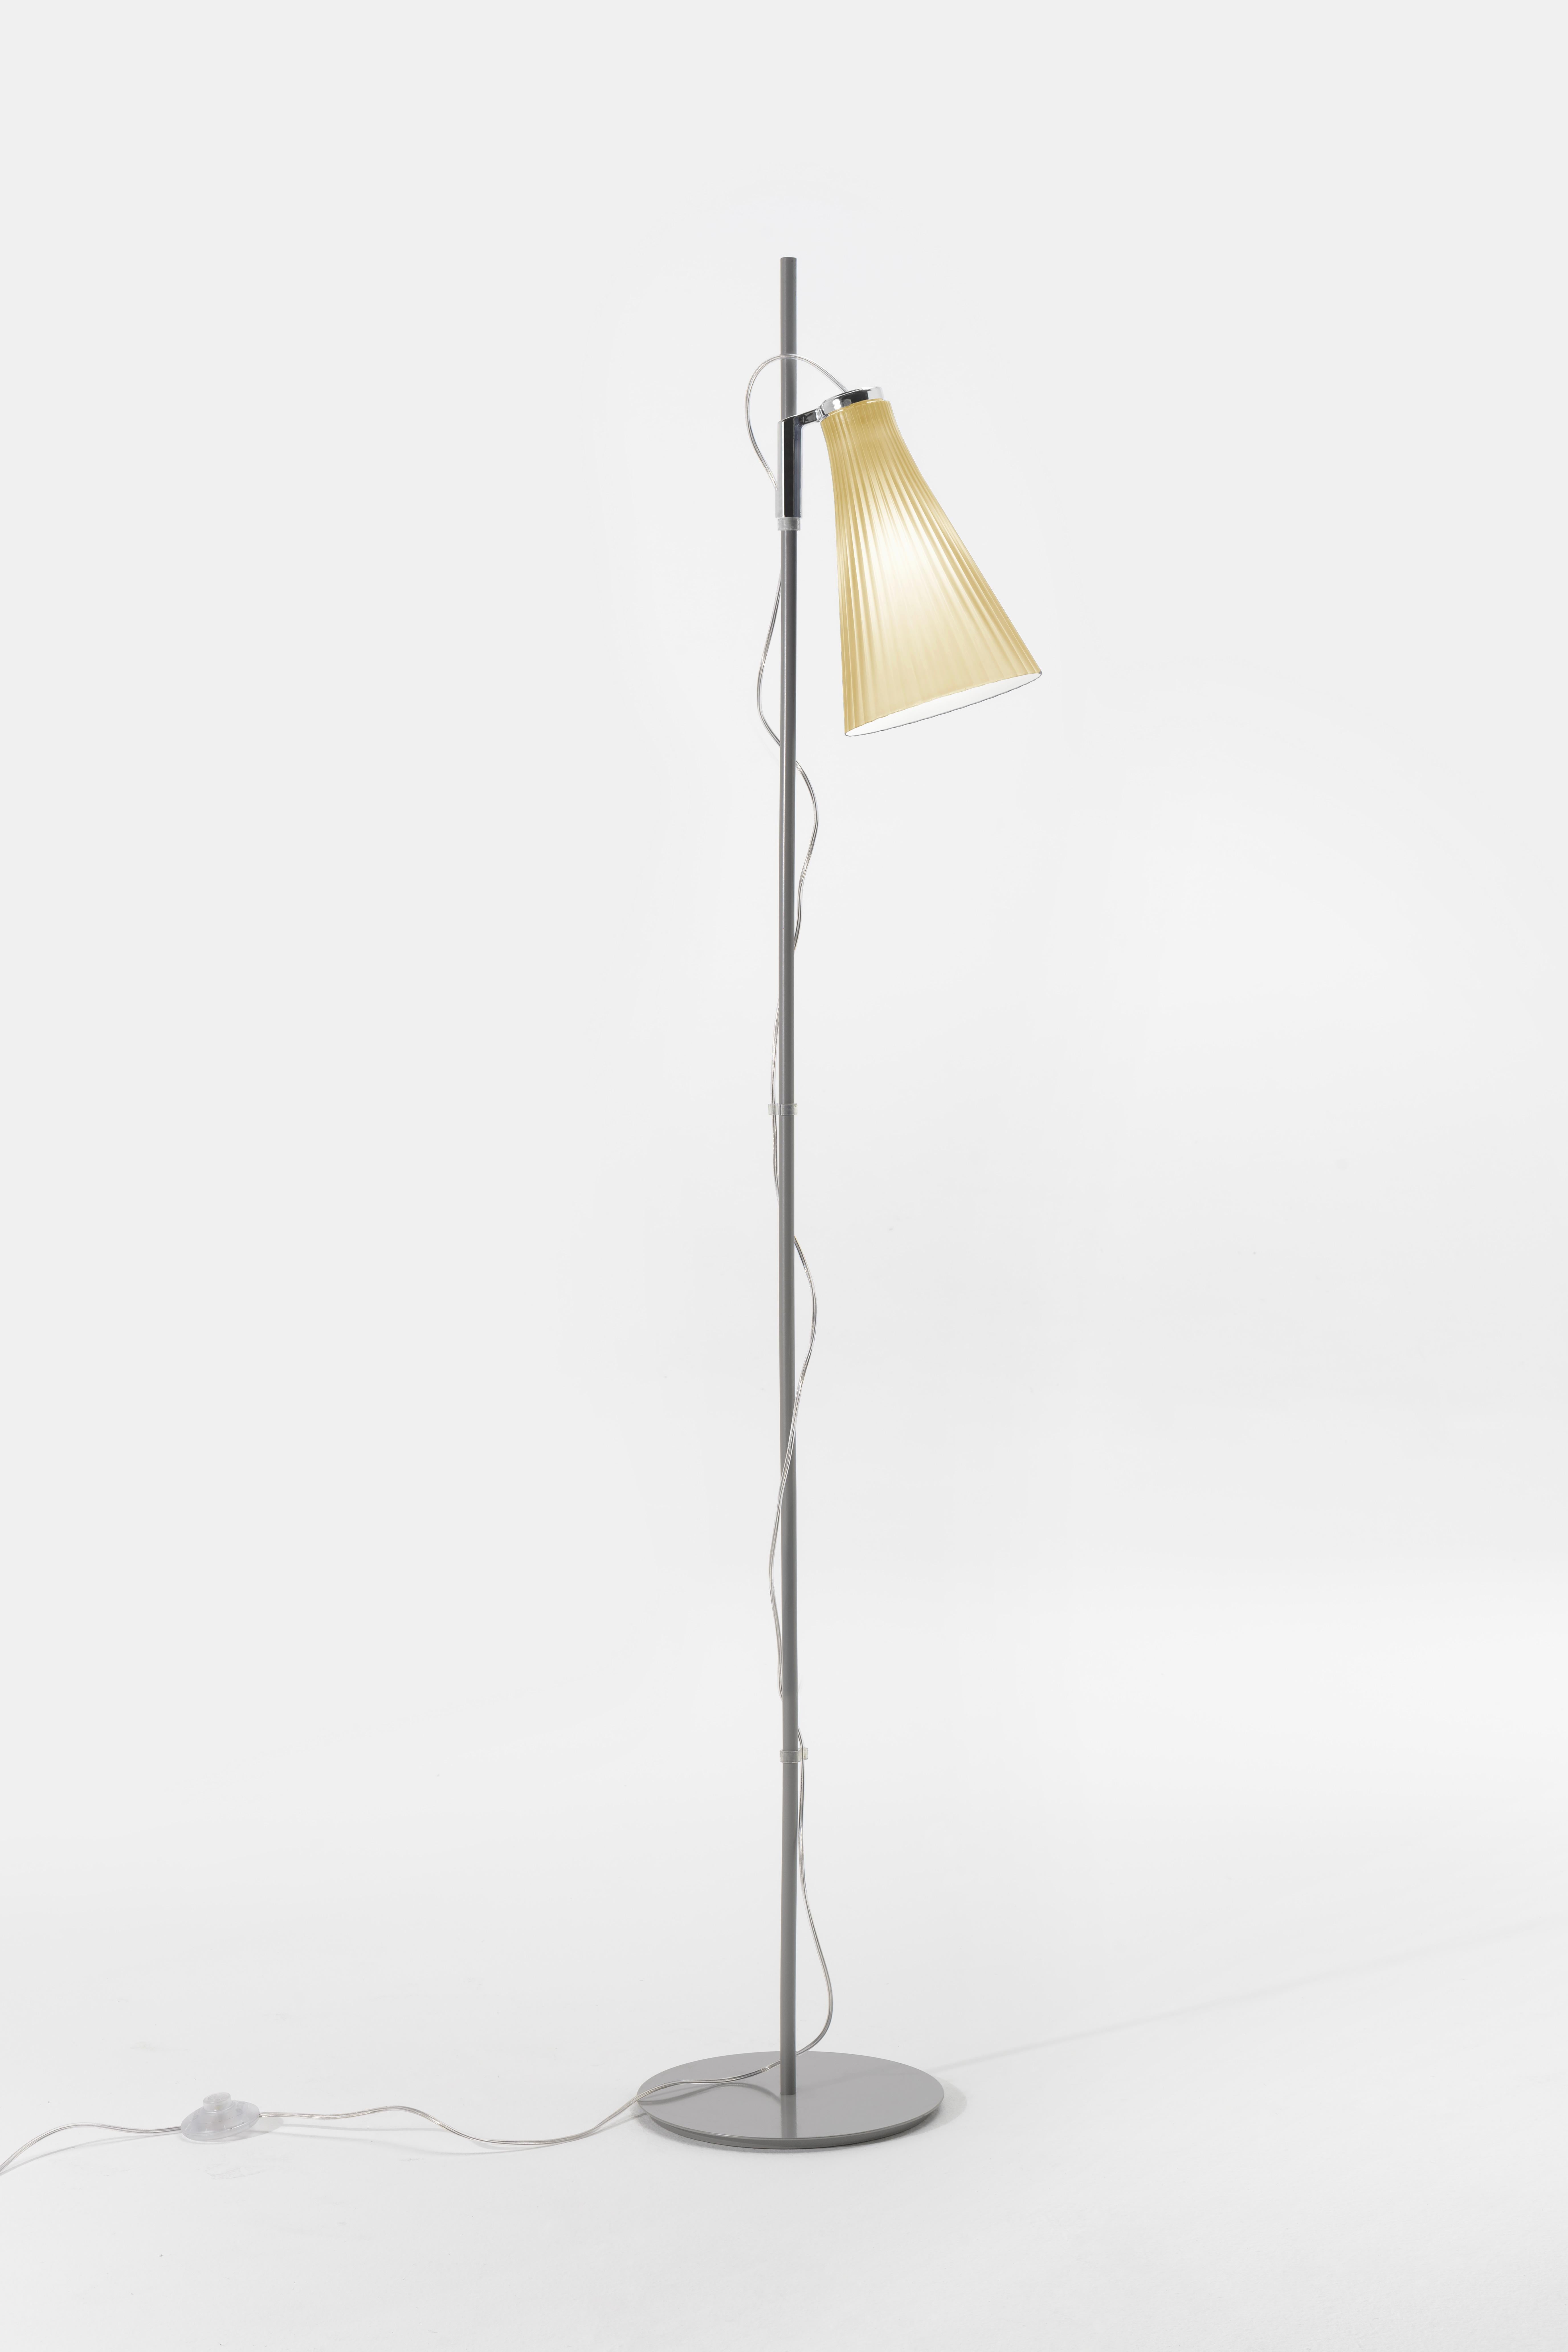 La lampada da terra K-LUX si distingue per l'affascinante modo in cui rifrange la luce grazie alla plastica bi-iniettata appositamente formata e per il paralume bicolore, bianco all'interno e colorato all'esterno. La lampada è disponibile in sei